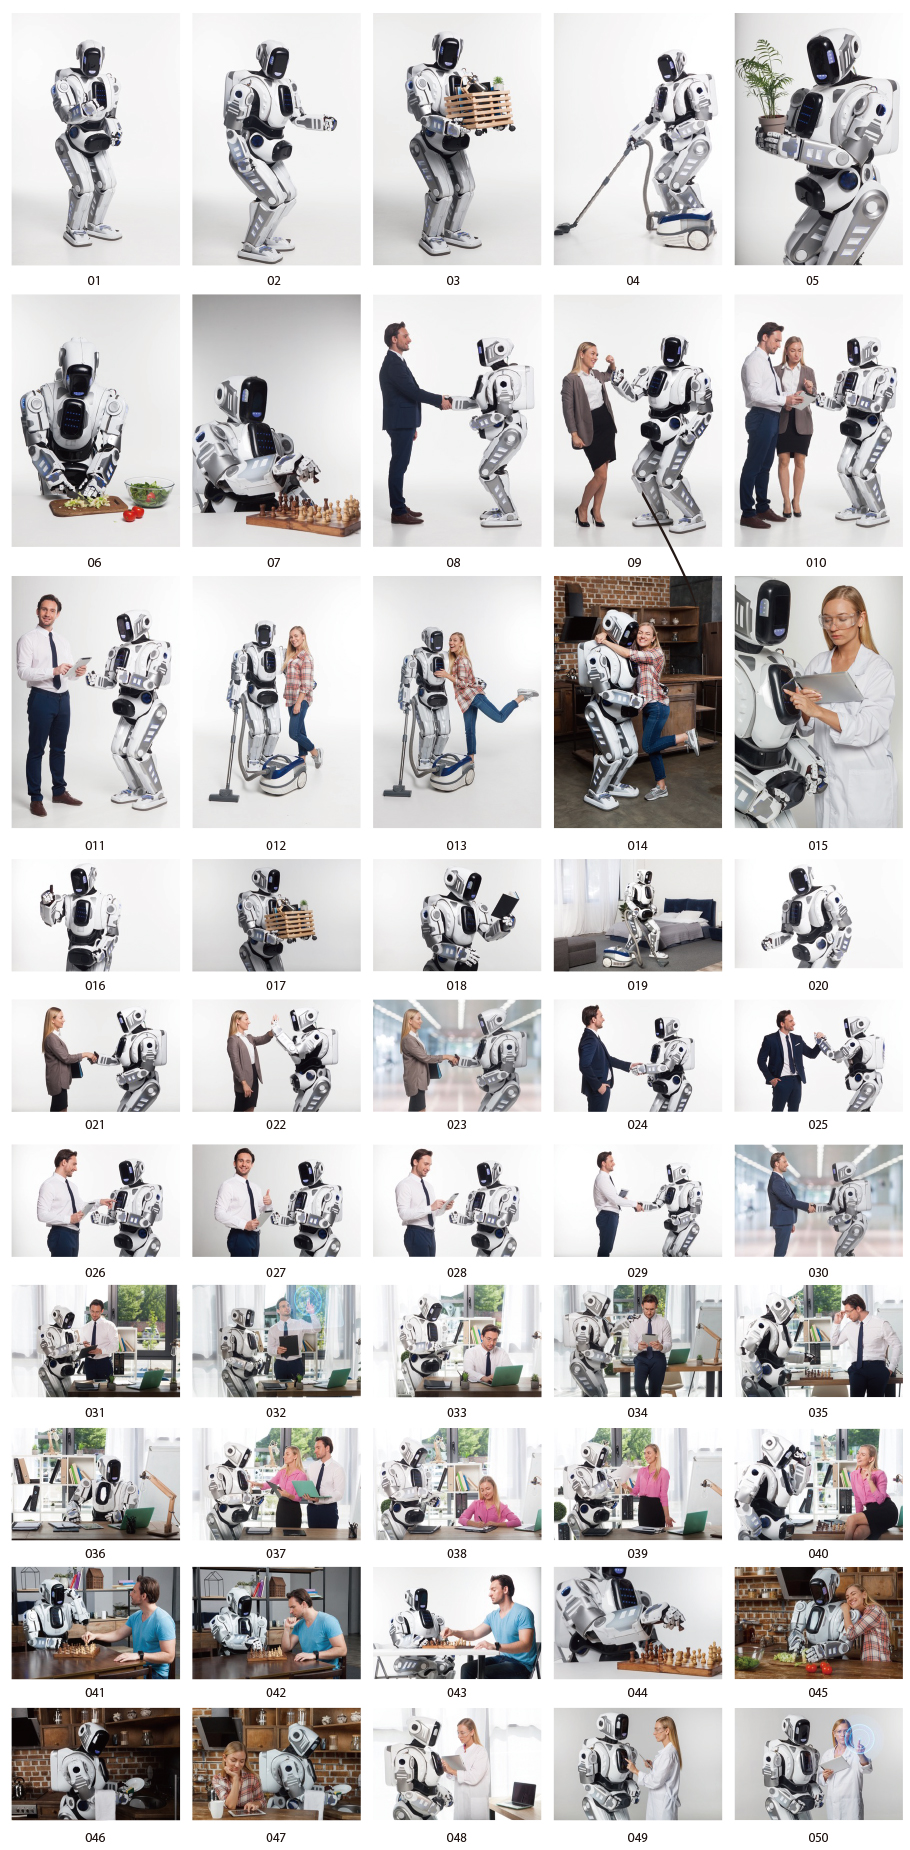 AI · Robot photos